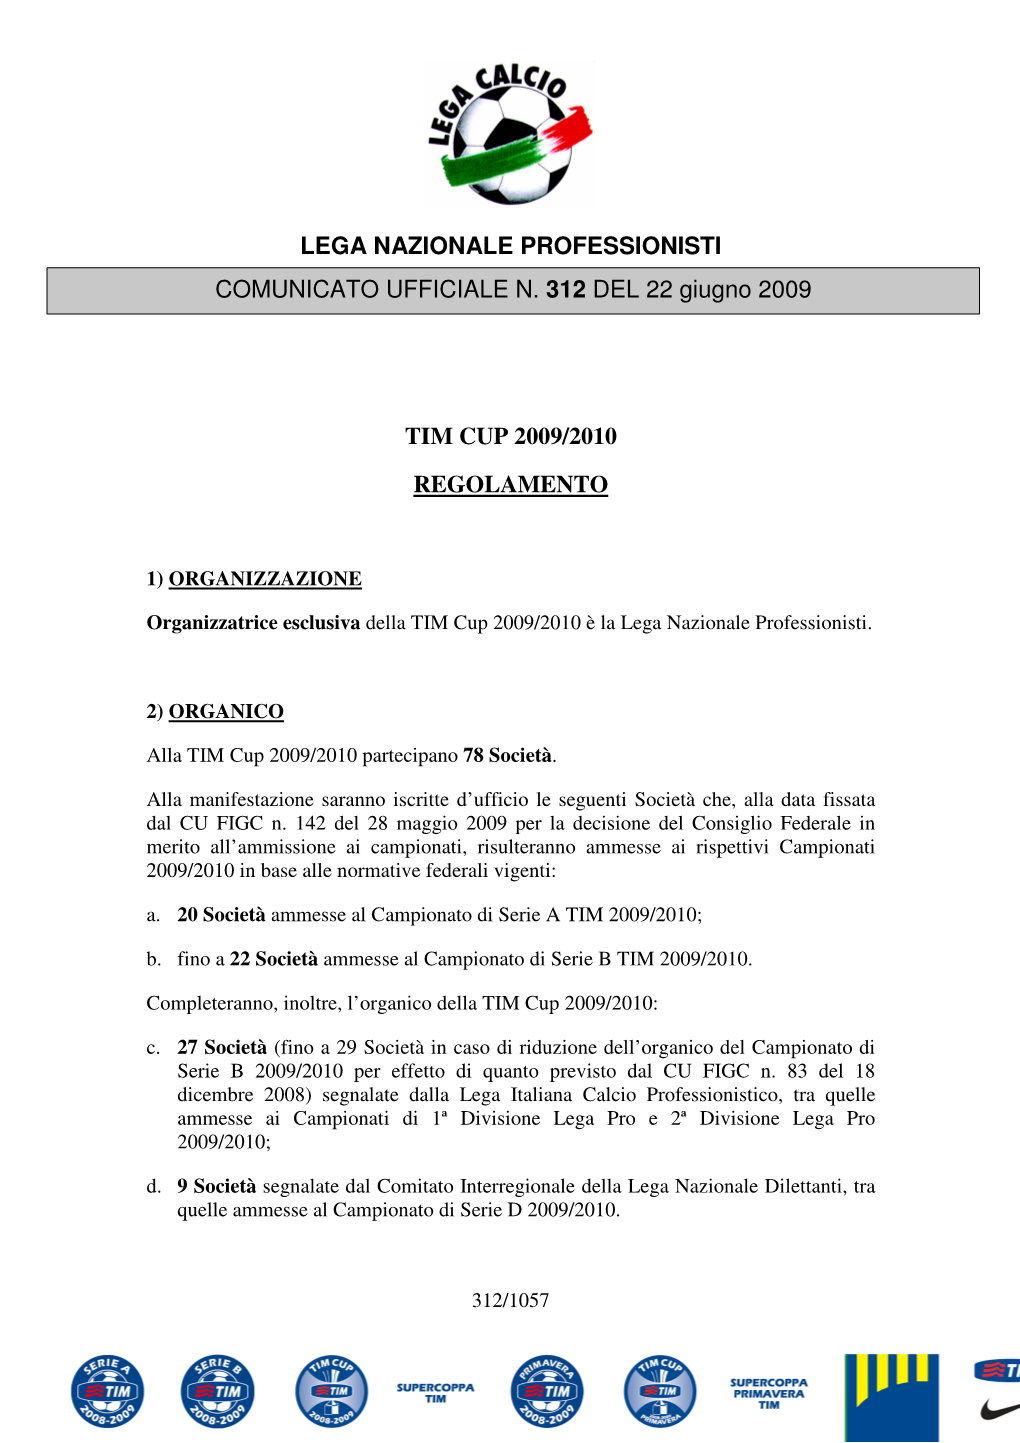 Lega Nazionale Professionisti Tim Cup 2009/2010 Regolamento